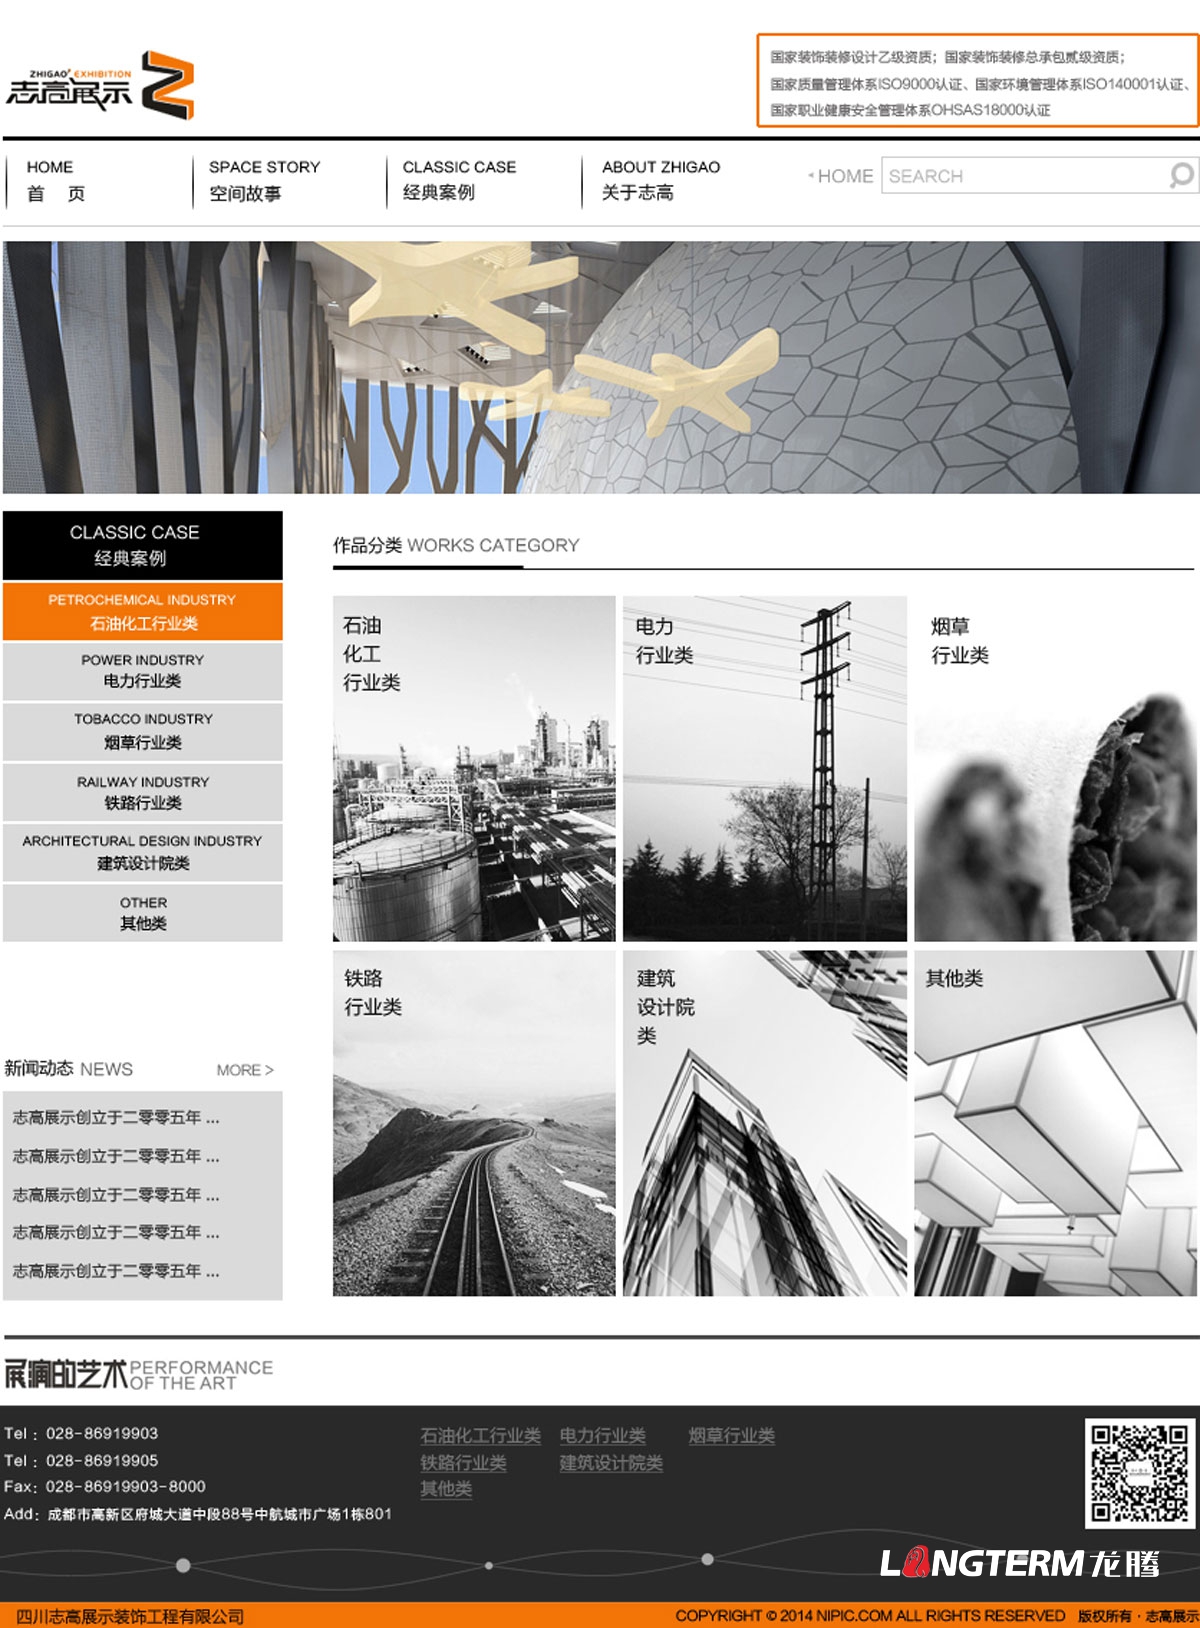 四川志高展示公司官网设计|工程展厅展示展览公司企业形象官网设计制作建设